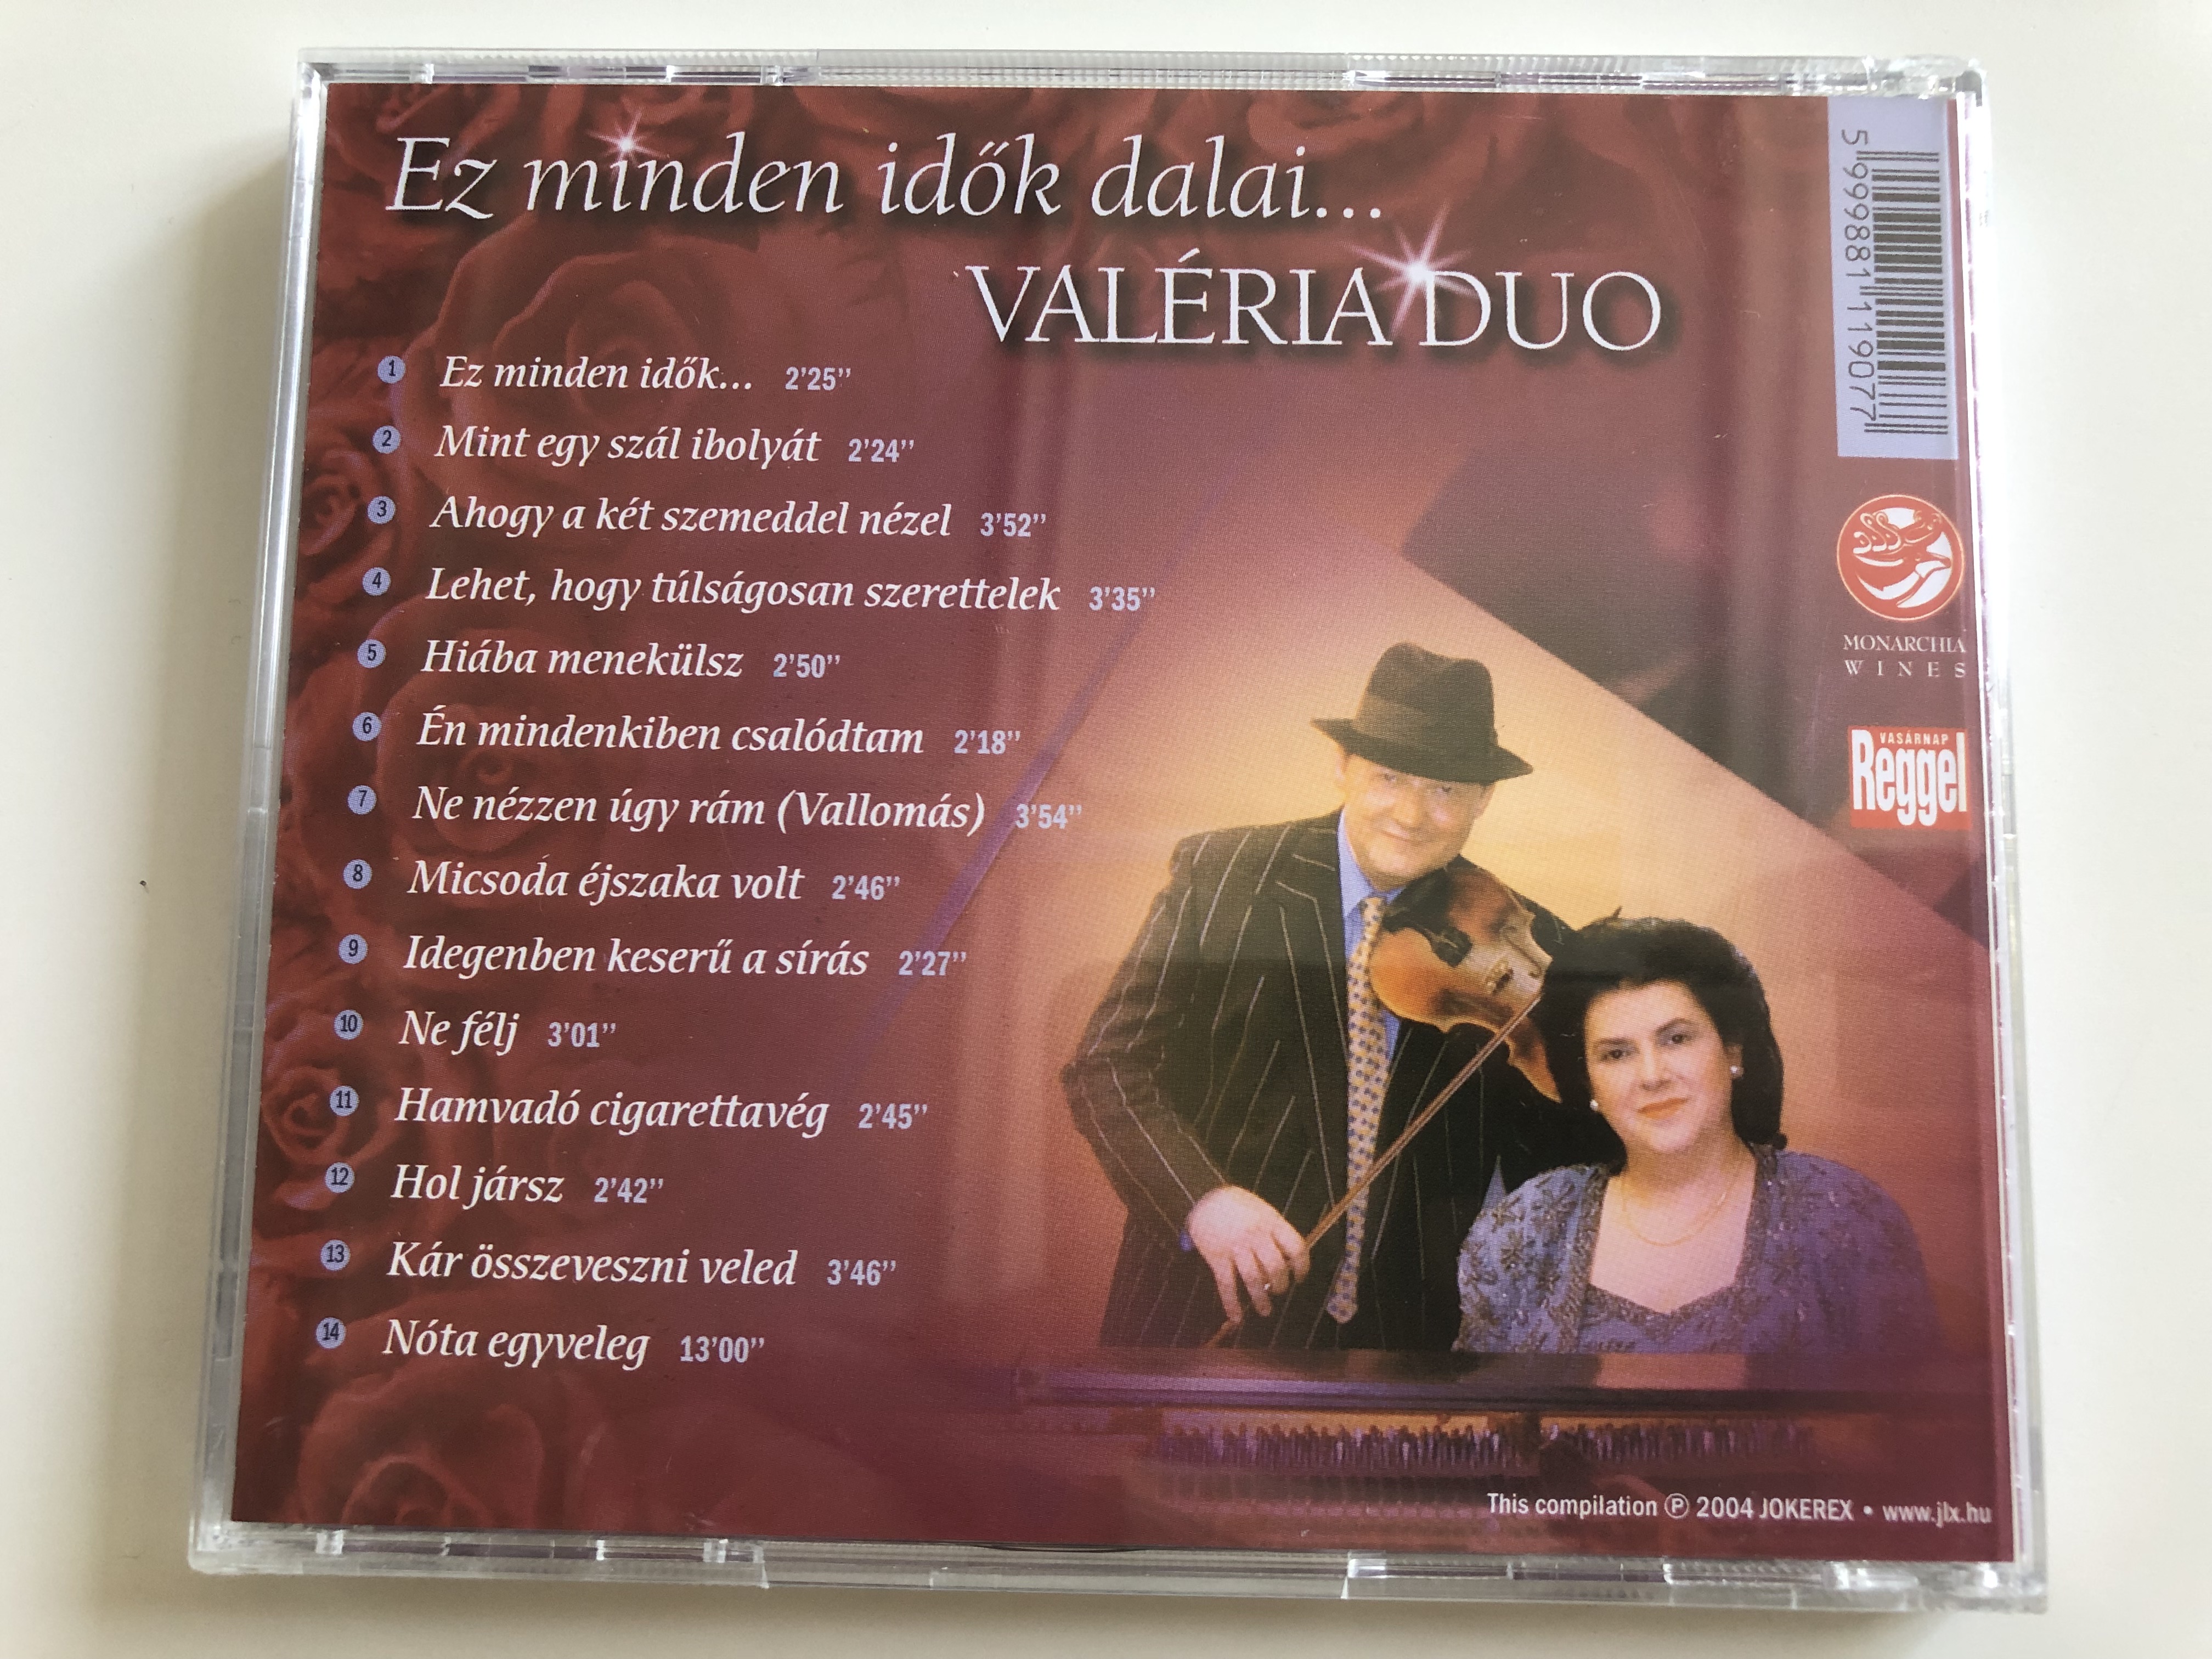 val-ria-du-ez-minden-id-k-dalai...-audio-cd-2004-jokerex-6-.jpg